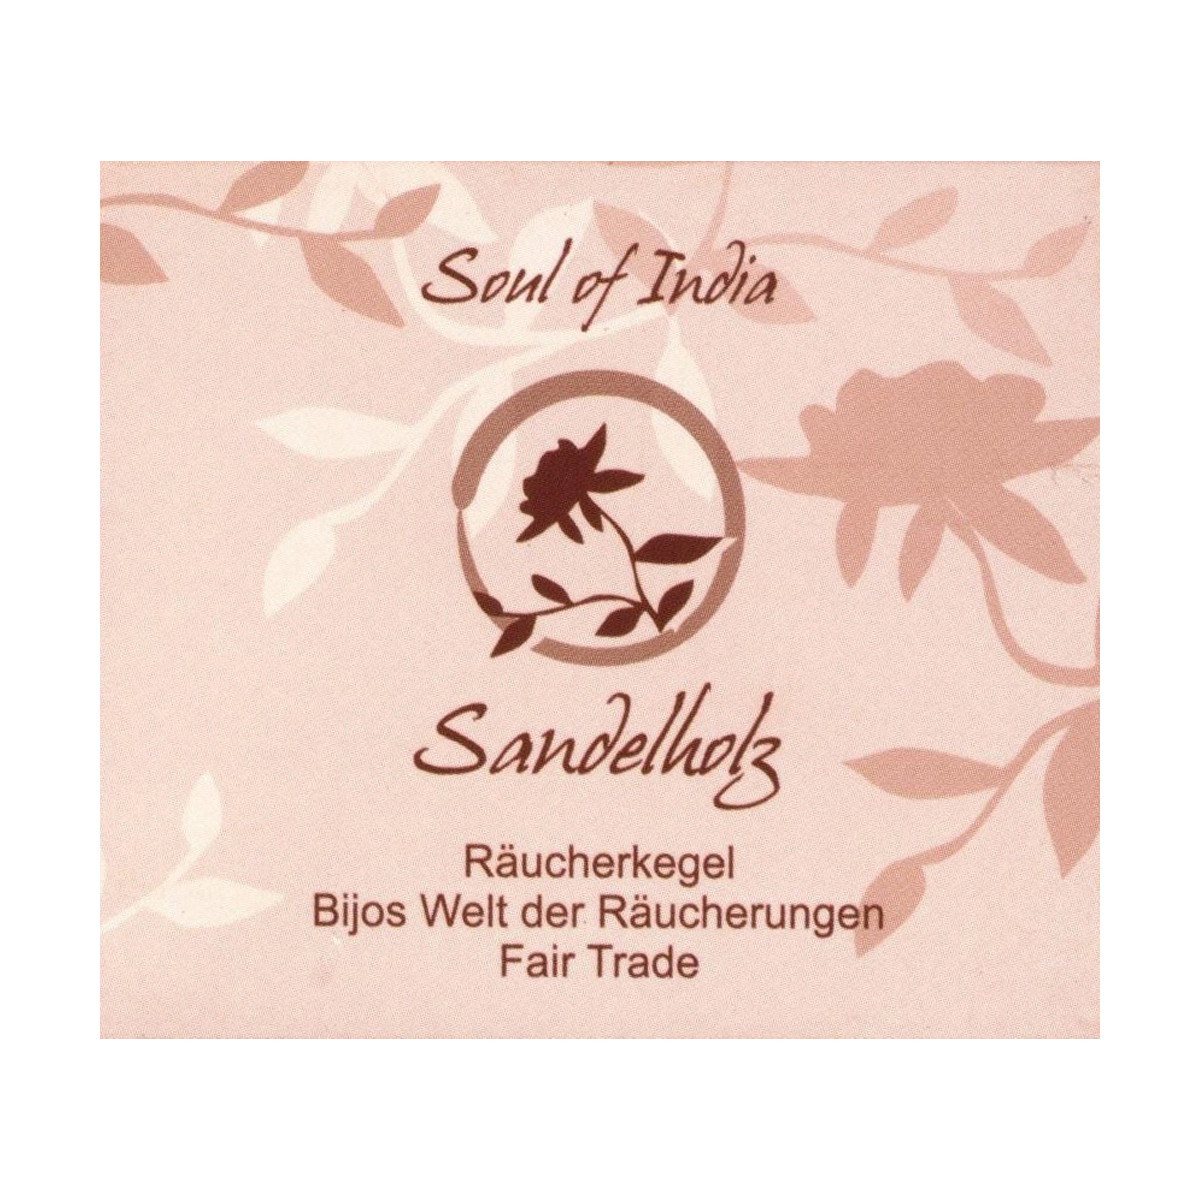 Sandelholz - Soul of India - FAIR TRADE Räucherkegel